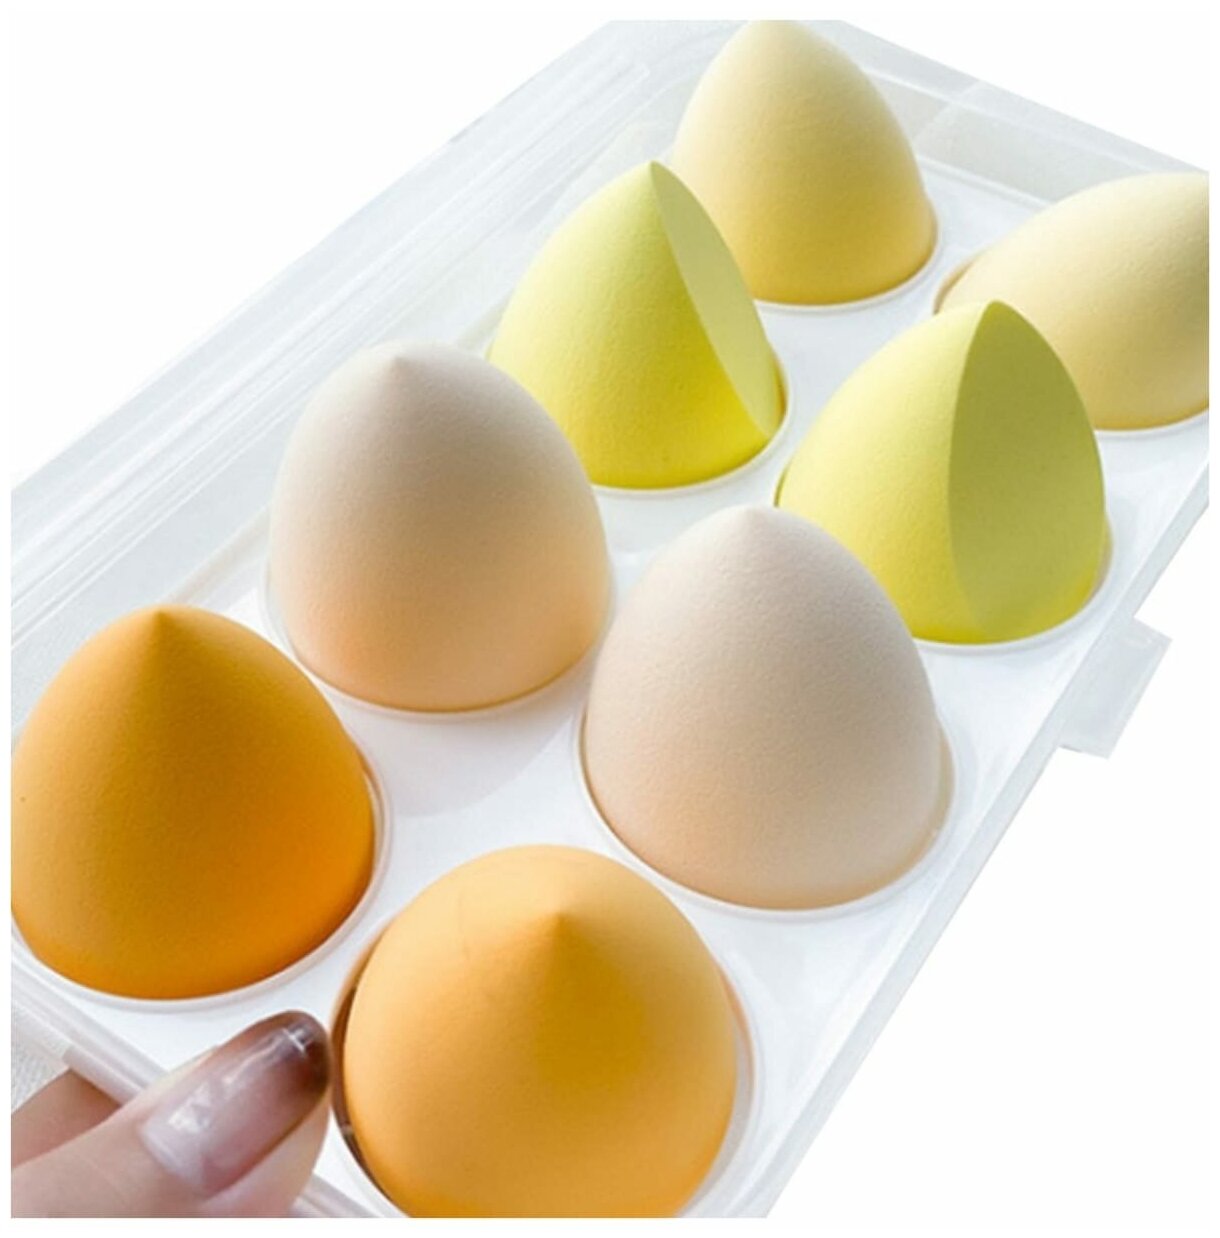 Спонжи для макияжа Muscari косметический набор для кожи лица бьюти блендер для тонального крема яйца красоты спонж- аппликаторы комплект 8 шт